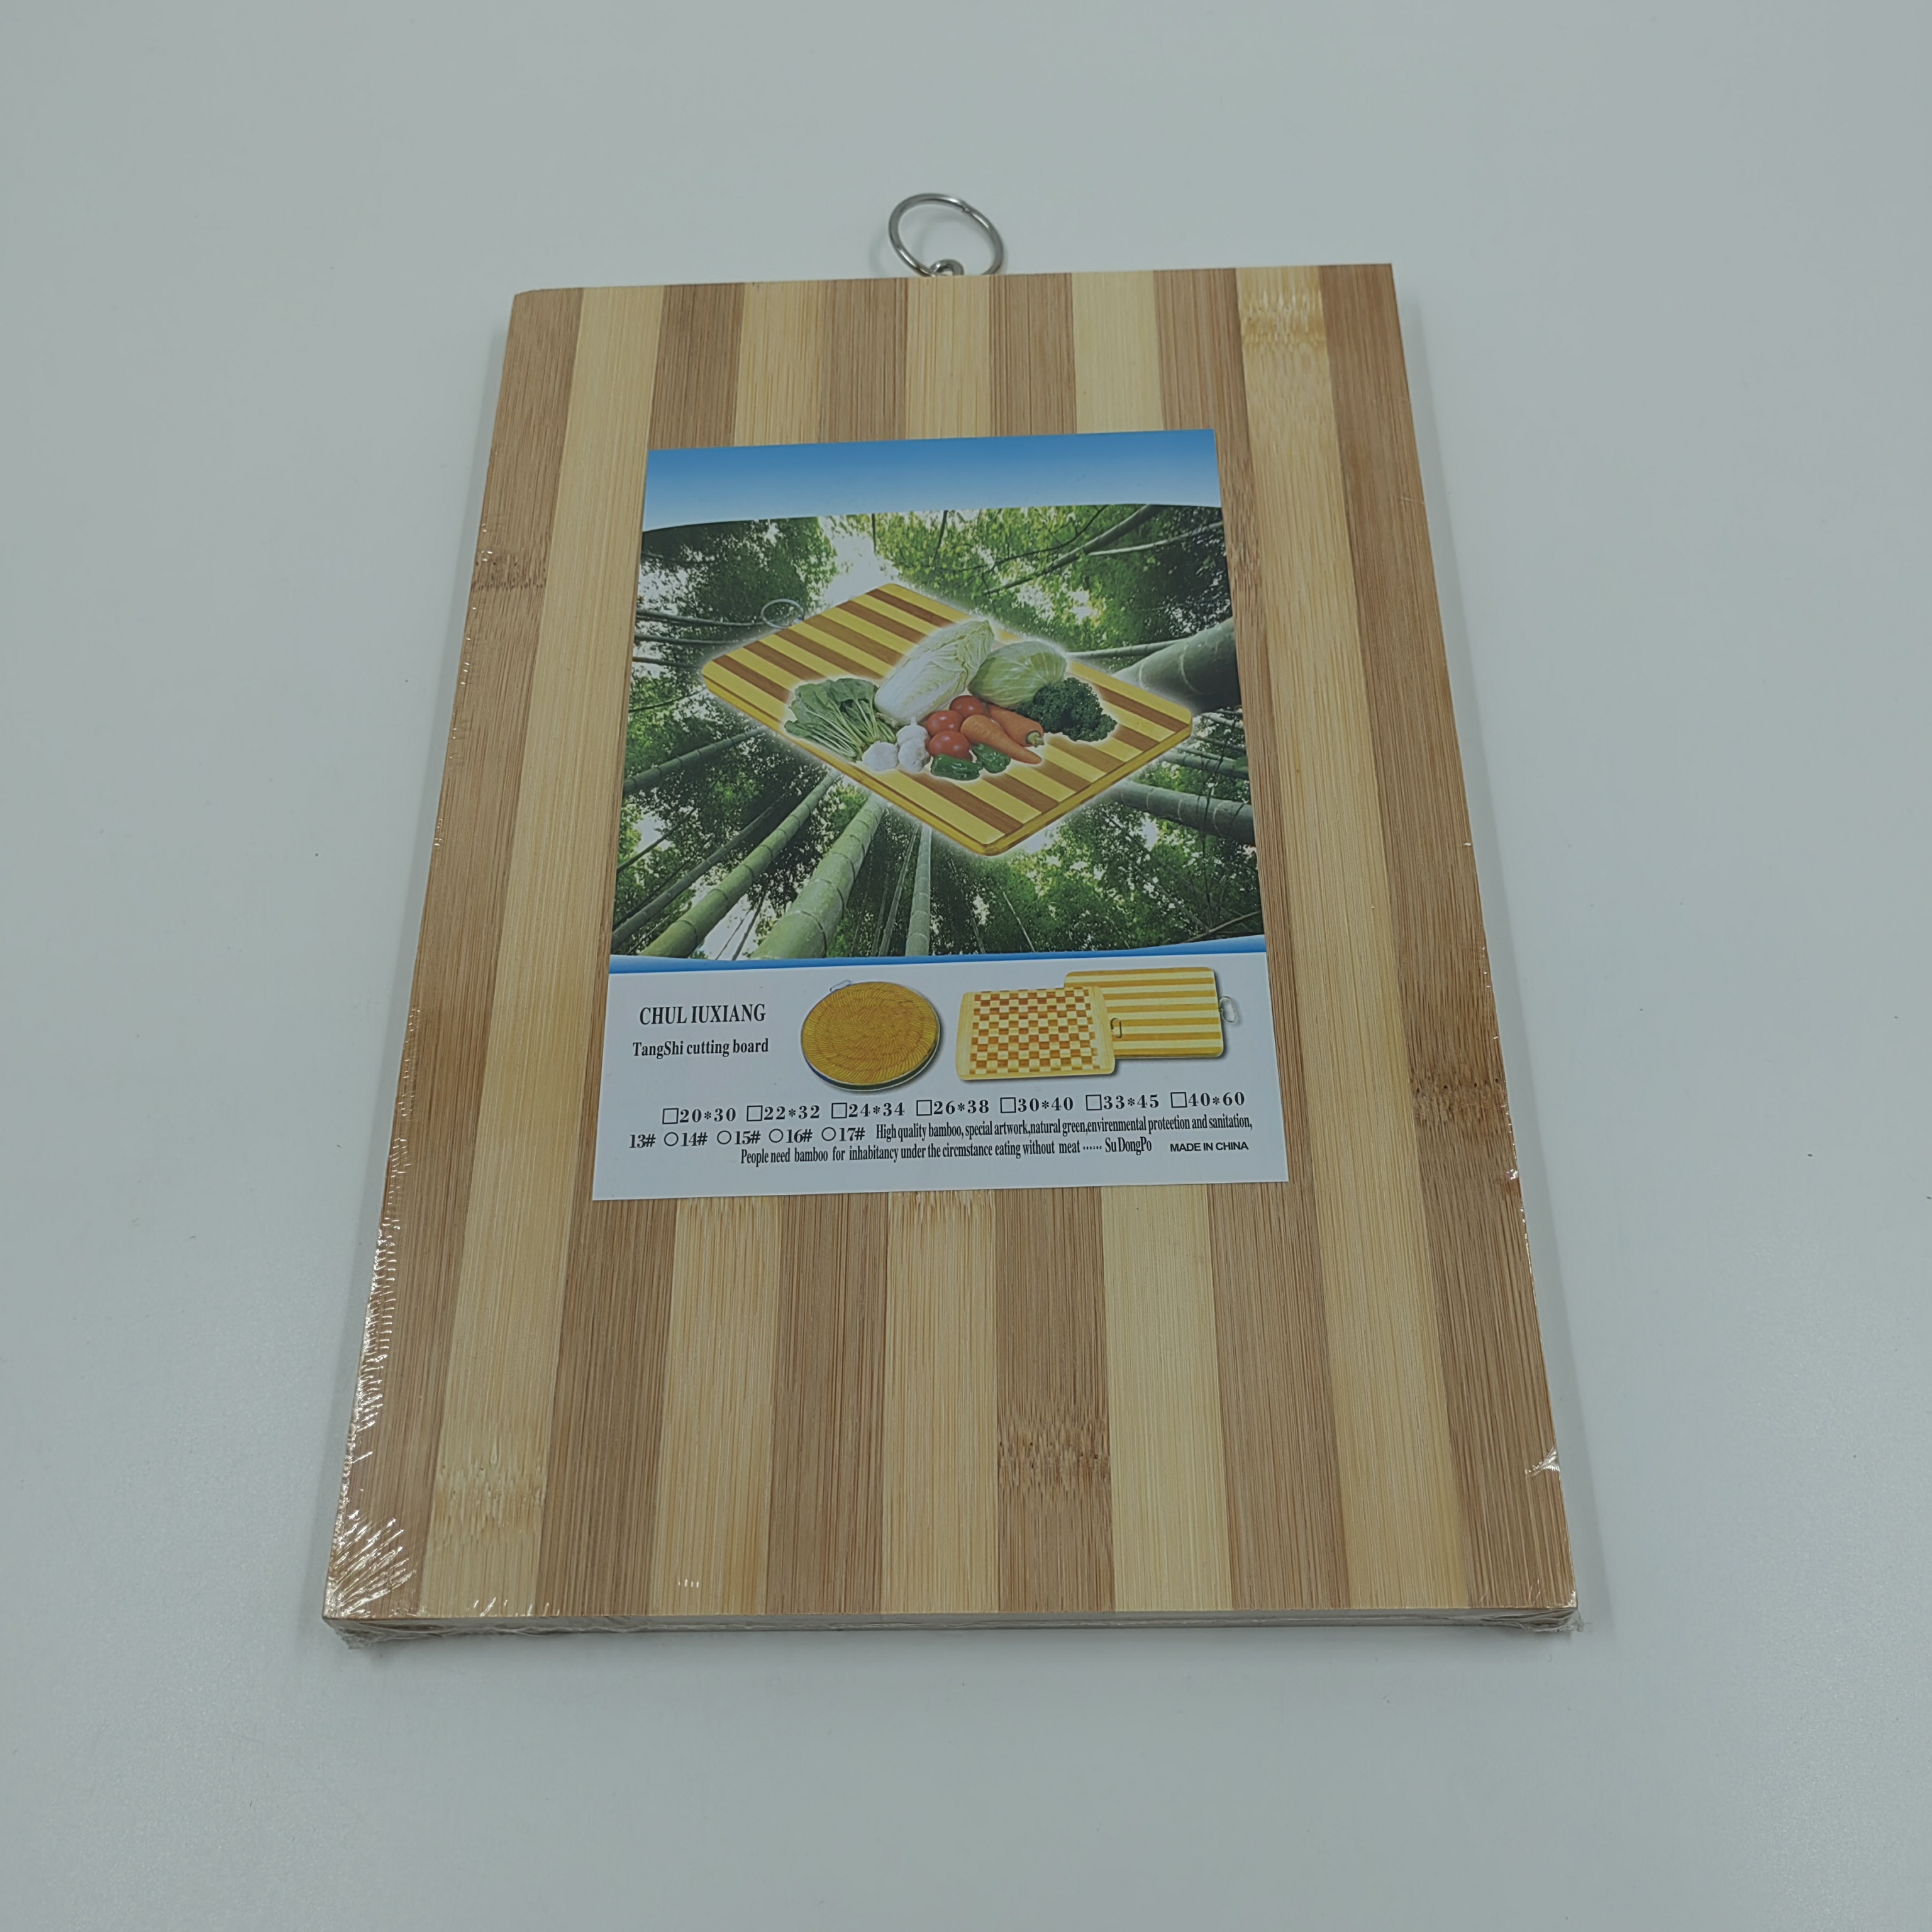 菜板/砧板/竹木菜板/厨房工具/碳化菜板/碳化竹砧板产品图